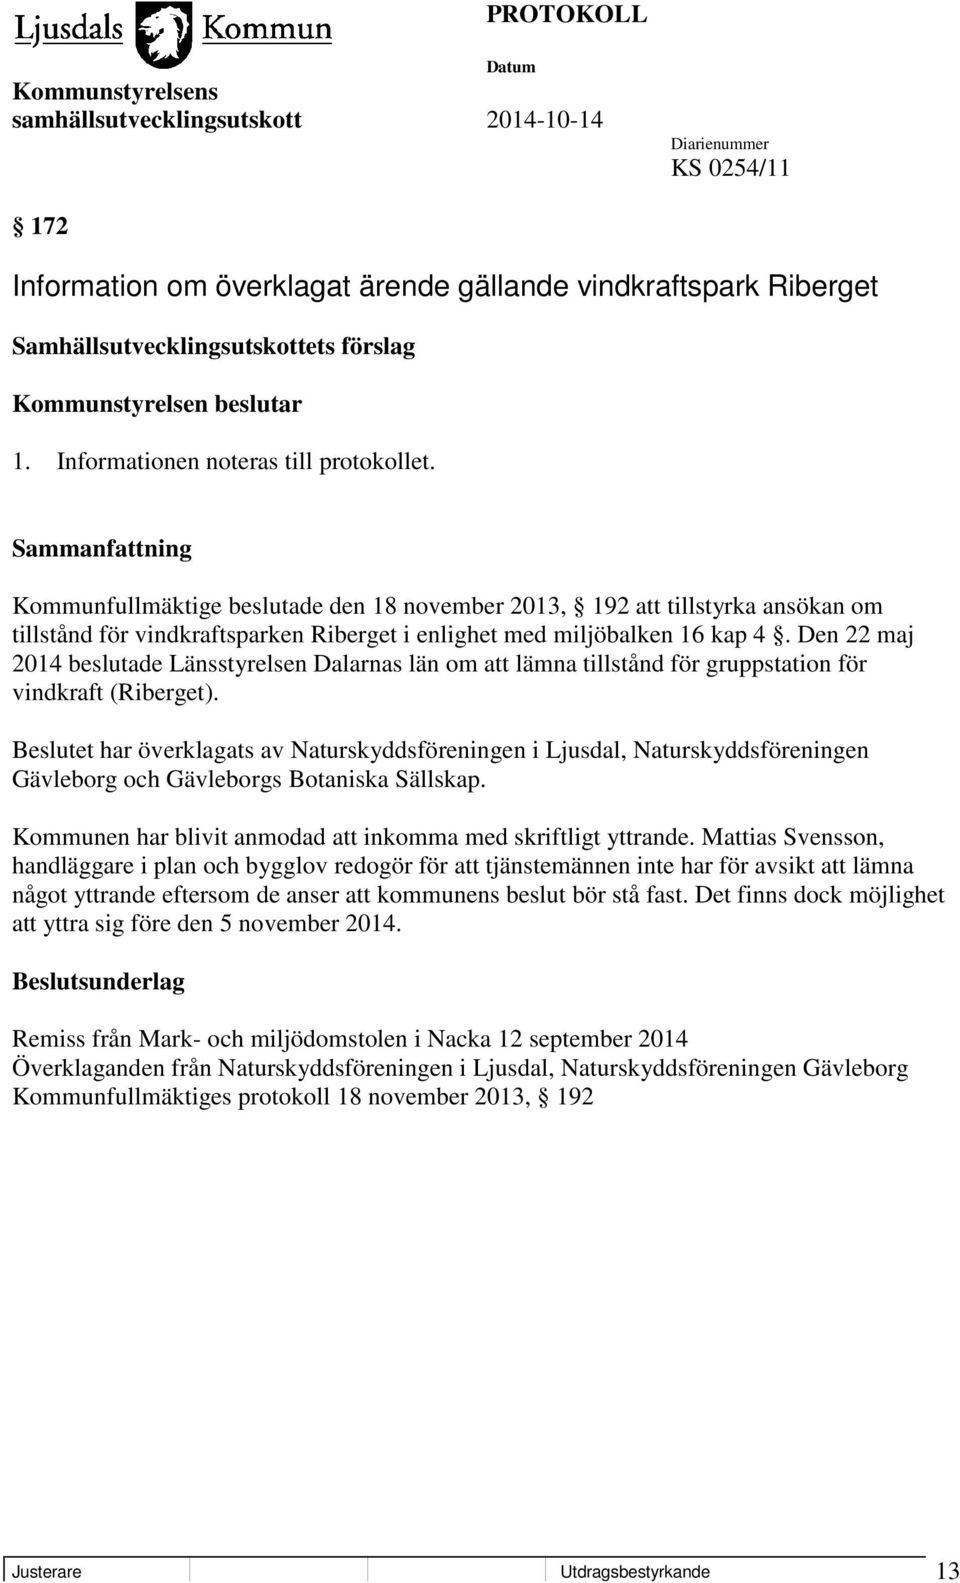 Den 22 maj 2014 beslutade Länsstyrelsen Dalarnas län om att lämna tillstånd för gruppstation för vindkraft (Riberget).